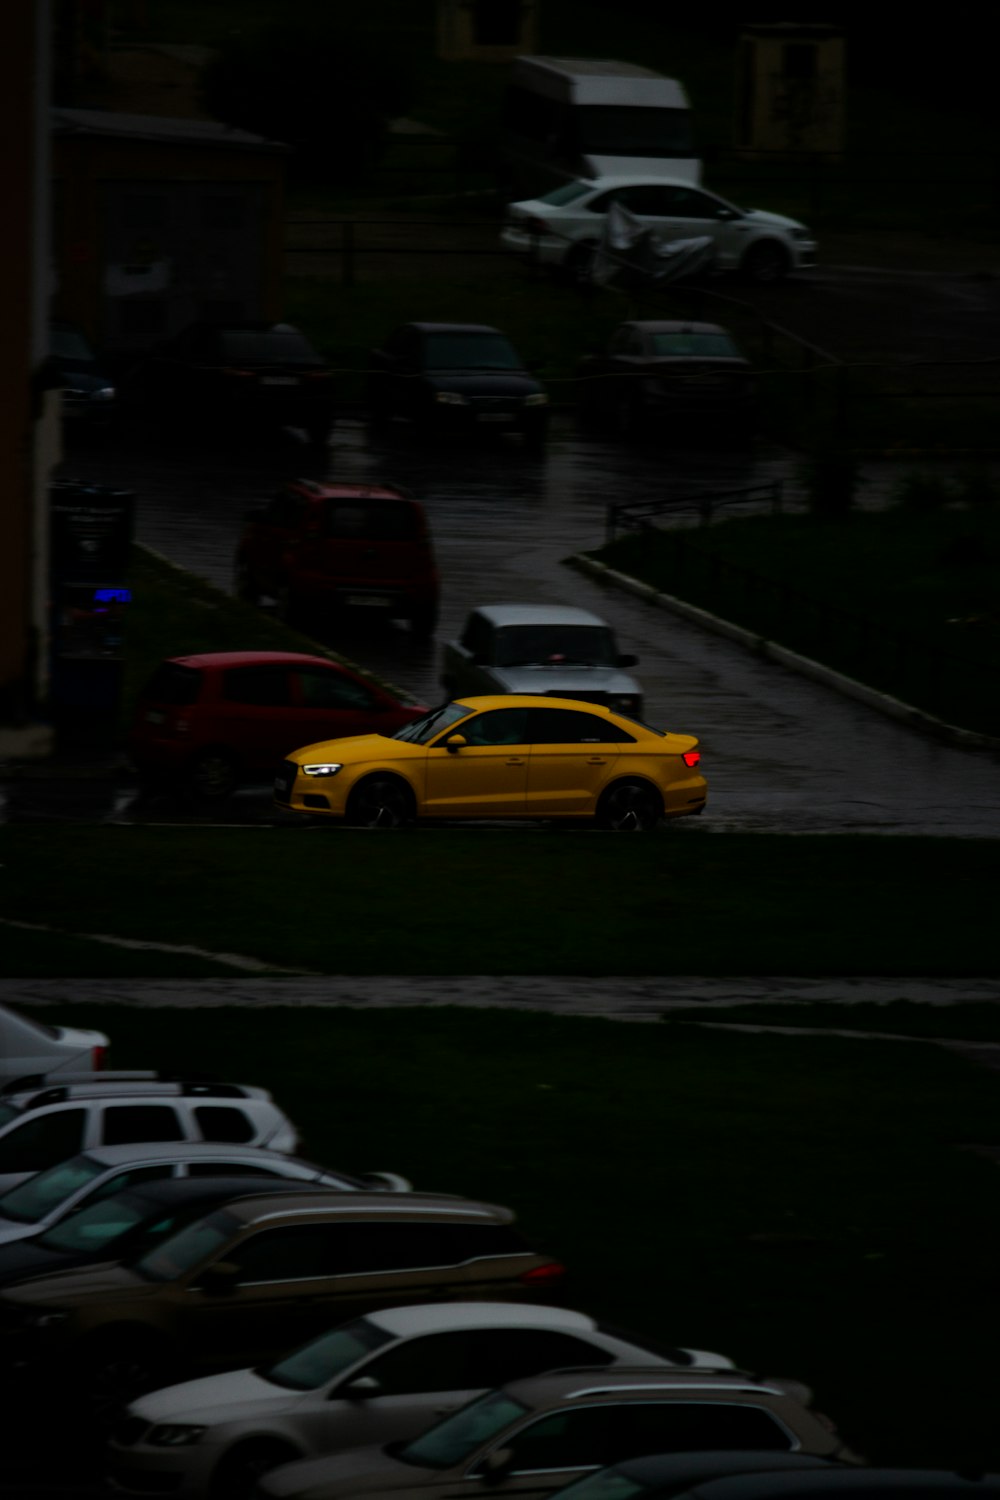 Un coche amarillo estacionado en un estacionamiento